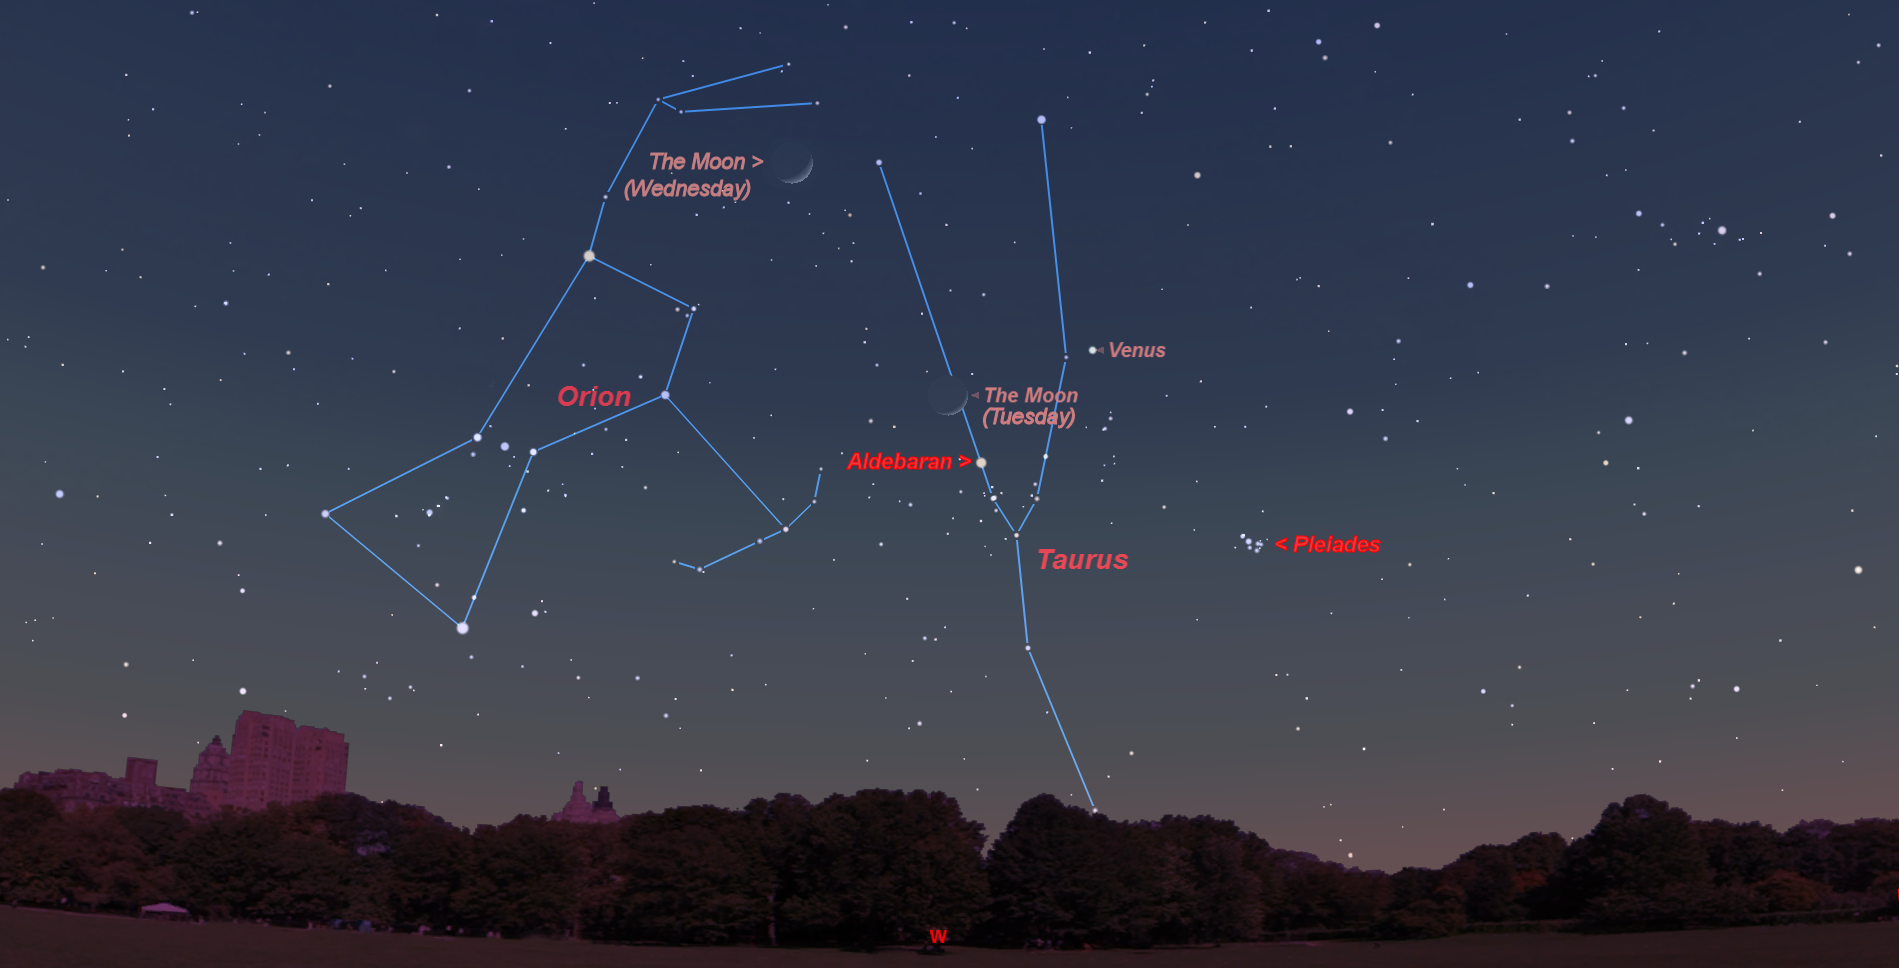 Созвездие орион на звездном небе. Бетельгейзе в созвездии Ориона. Звезда Бетельгейзе в созвездии Ориона. Созвездие Ориона в ночном небе. Пояс Ориона Созвездие Бетельгейзе.